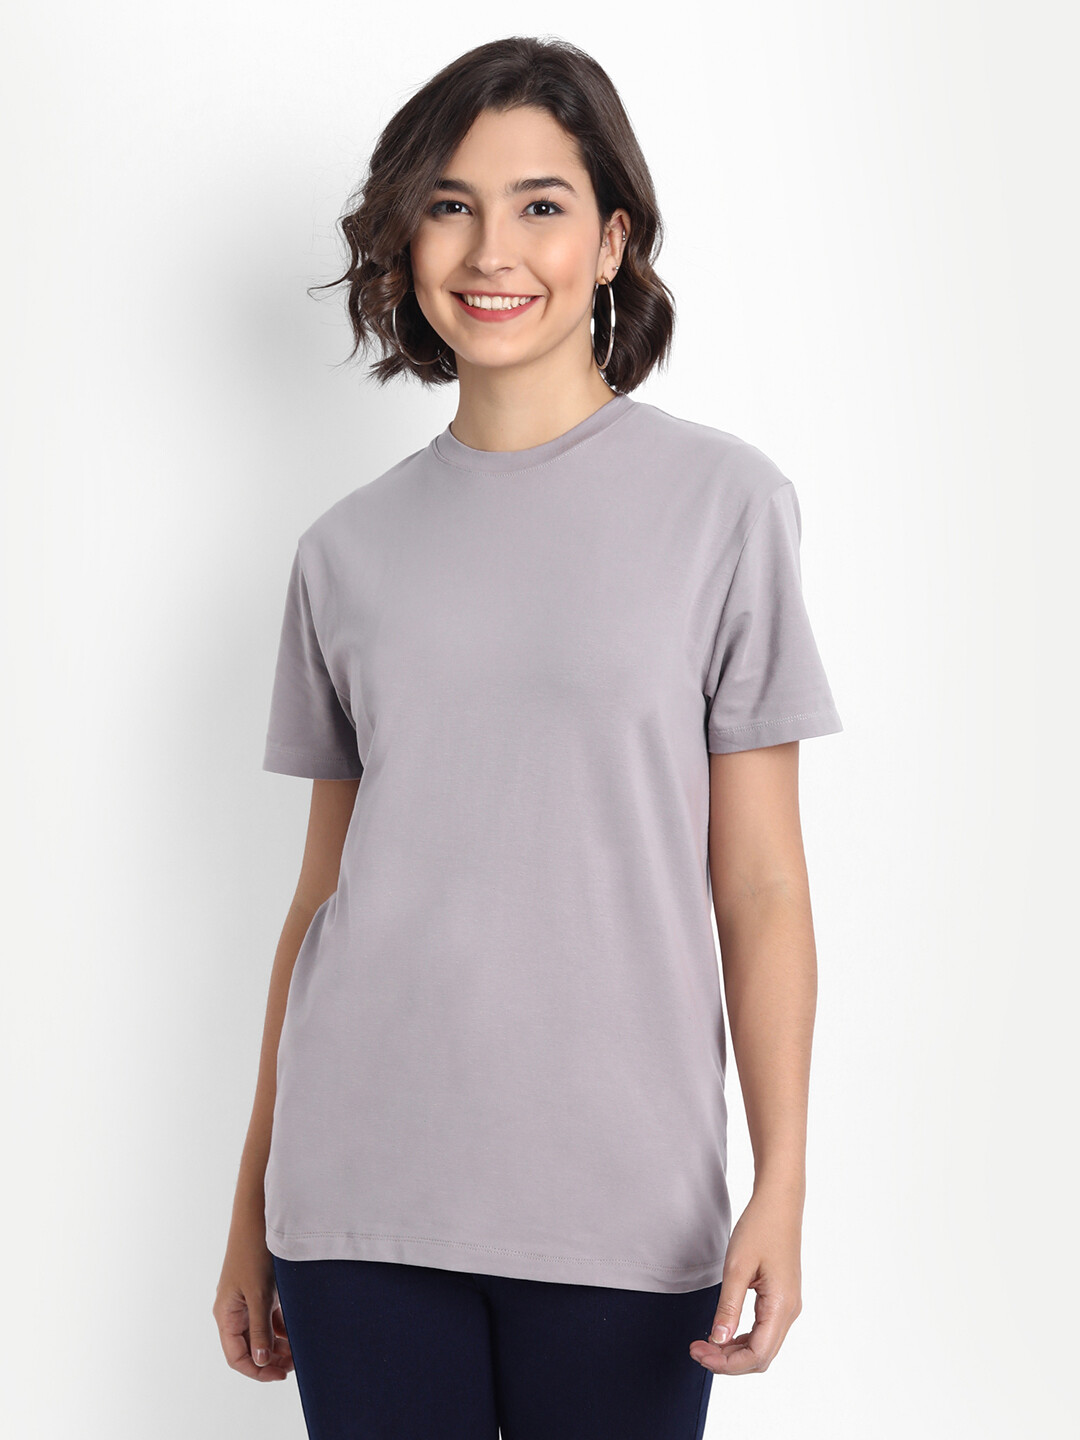 Women's Ash Grey T-shirt